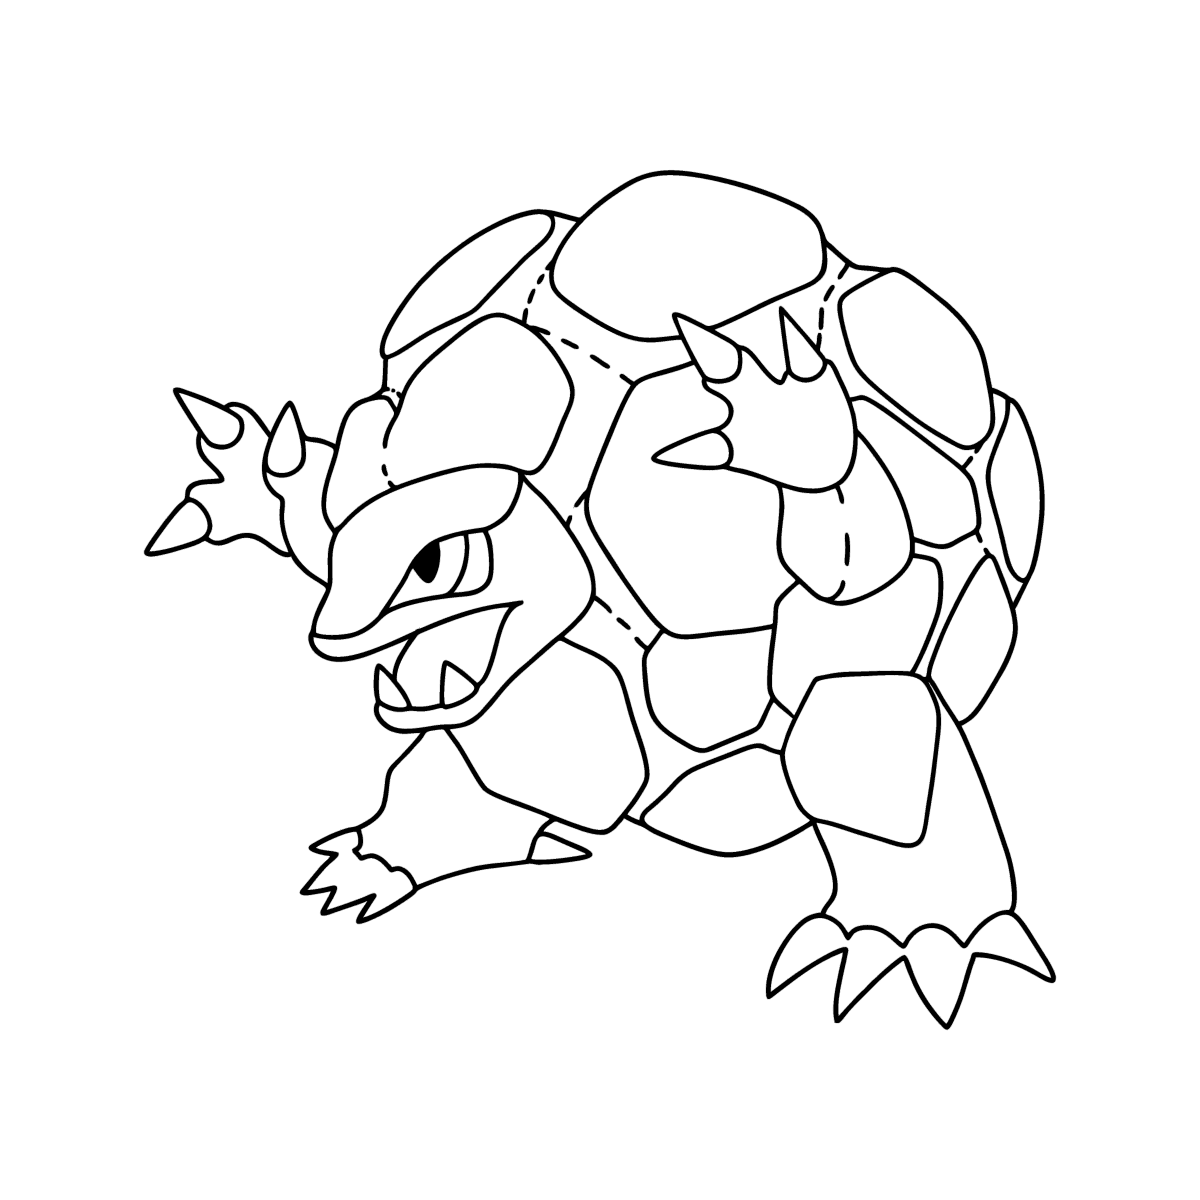 Desenho de Pokémon GO para colorir